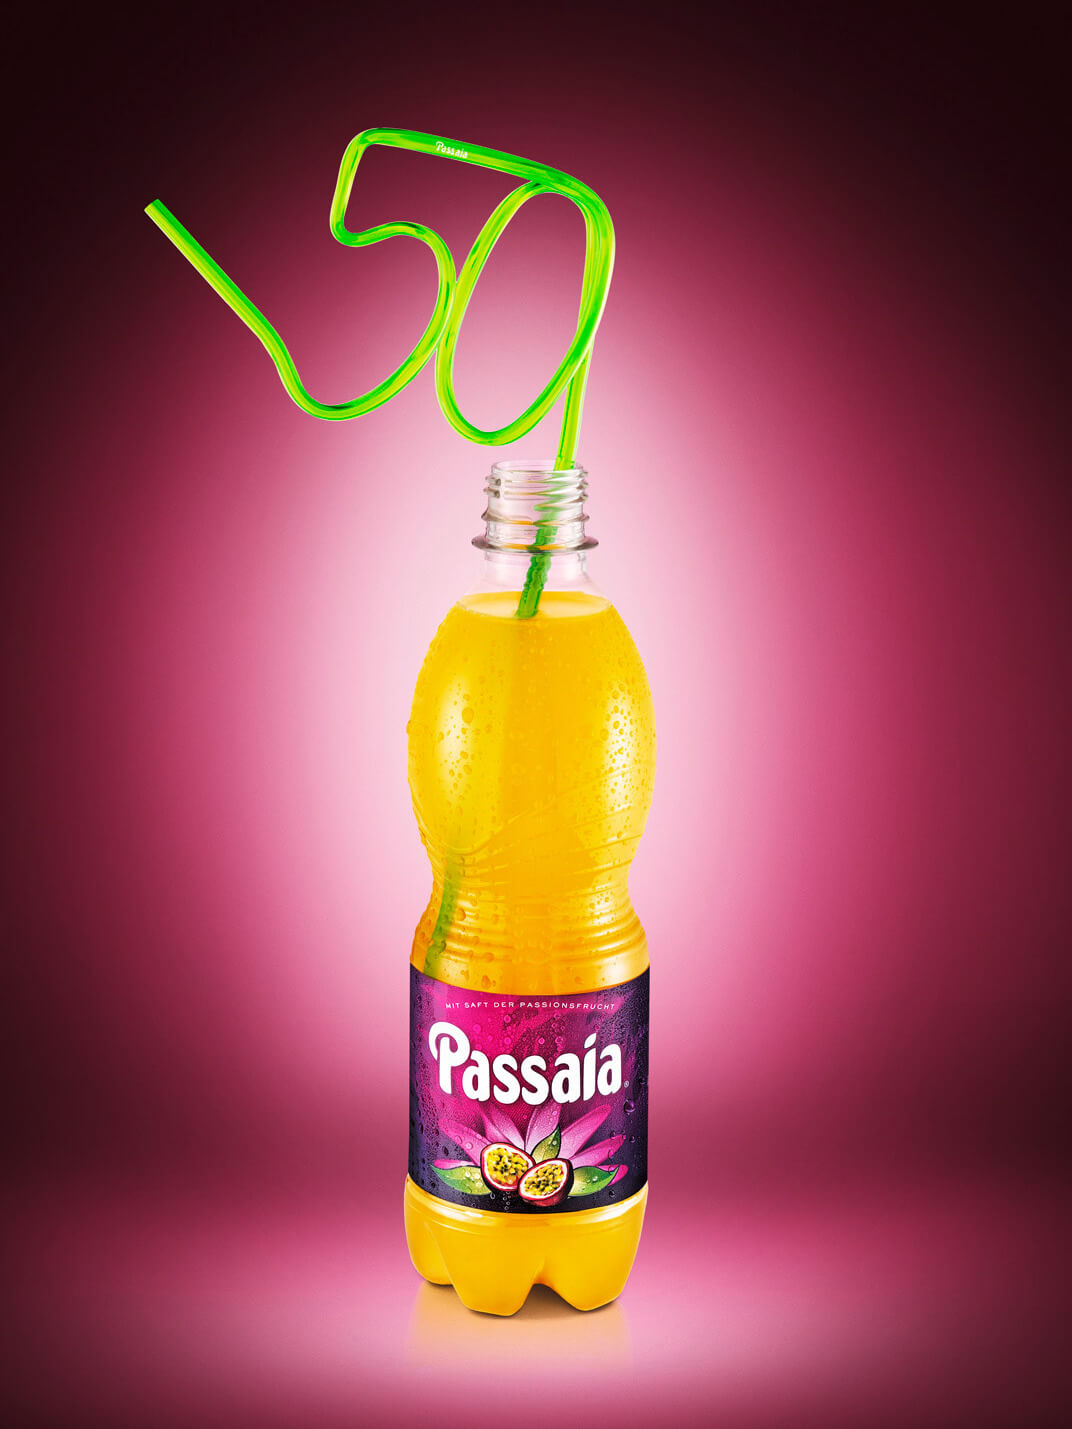 Passaia Swiss Passion Fruit Soda